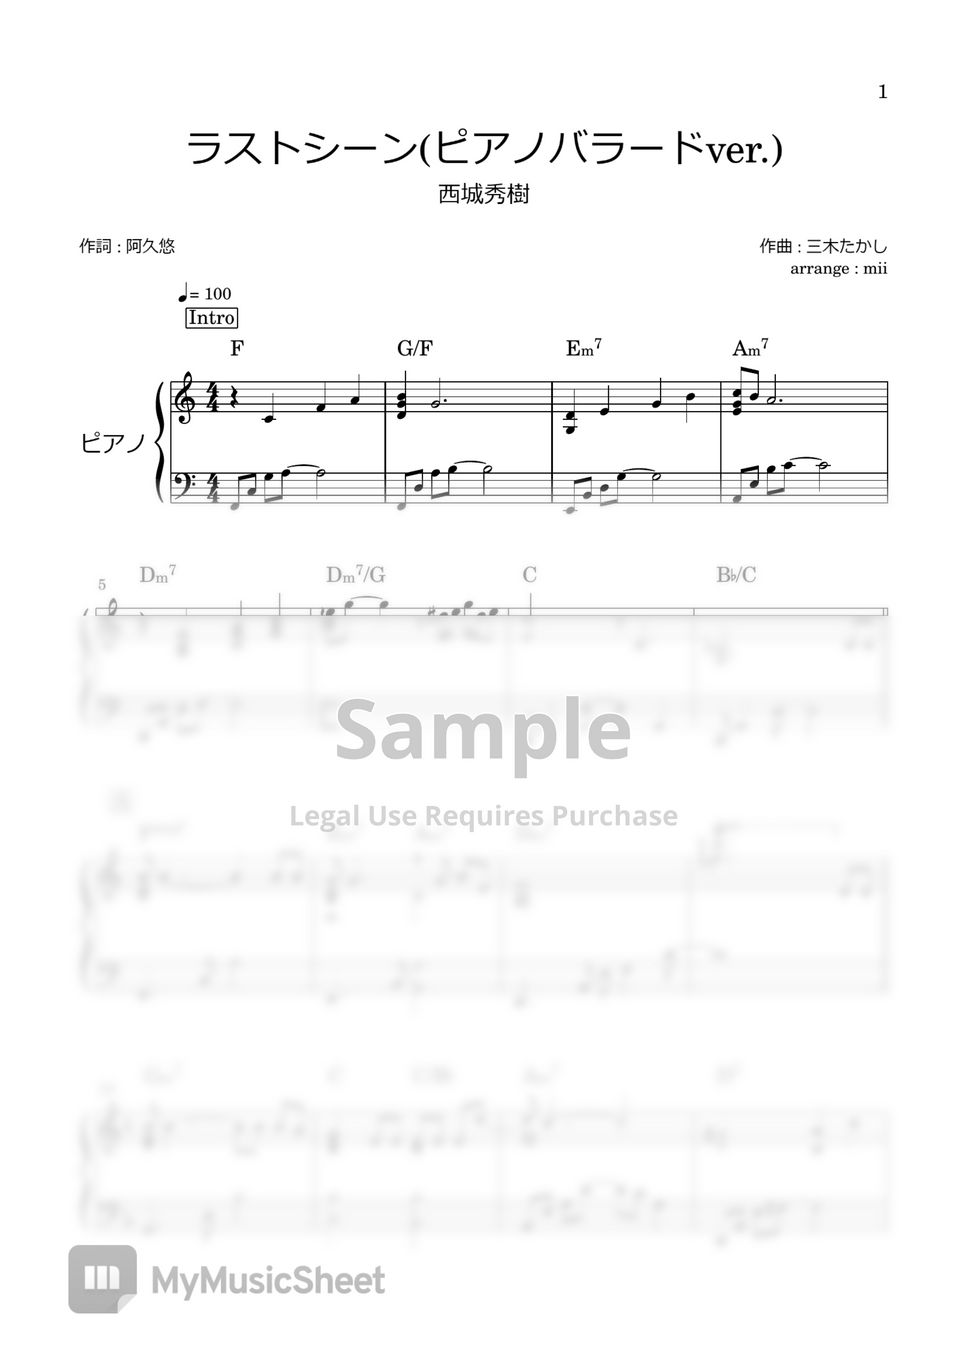 西城秀樹 - ラストシーン (piano ballad) by miiの楽譜棚